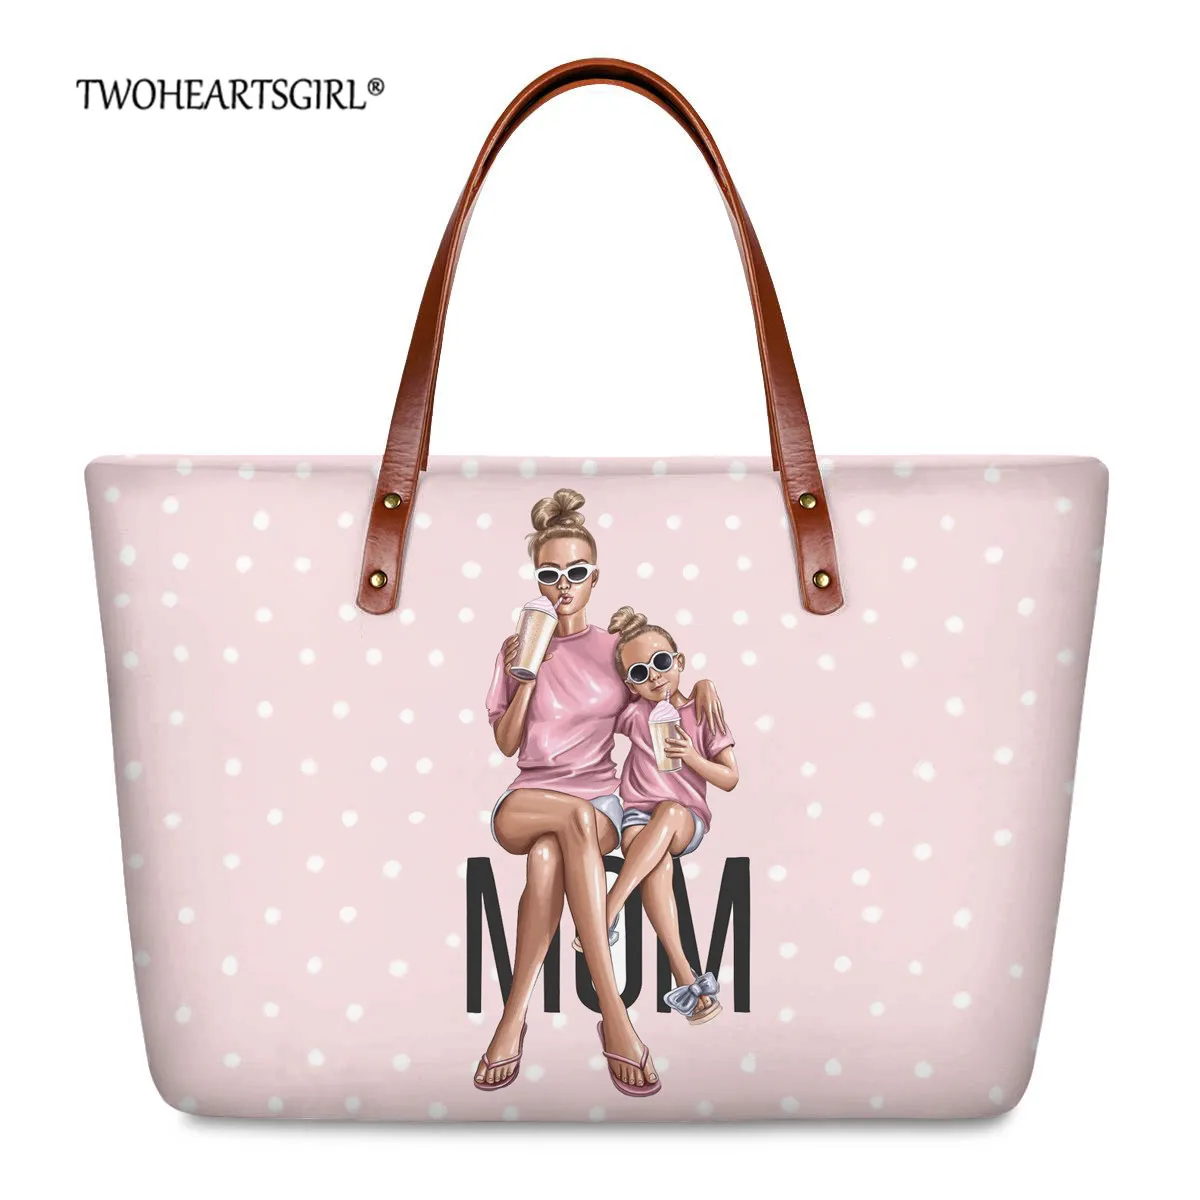 Женская дорожная сумка twoheart sgirl розовая прочная в горошек с принтом супер Мама